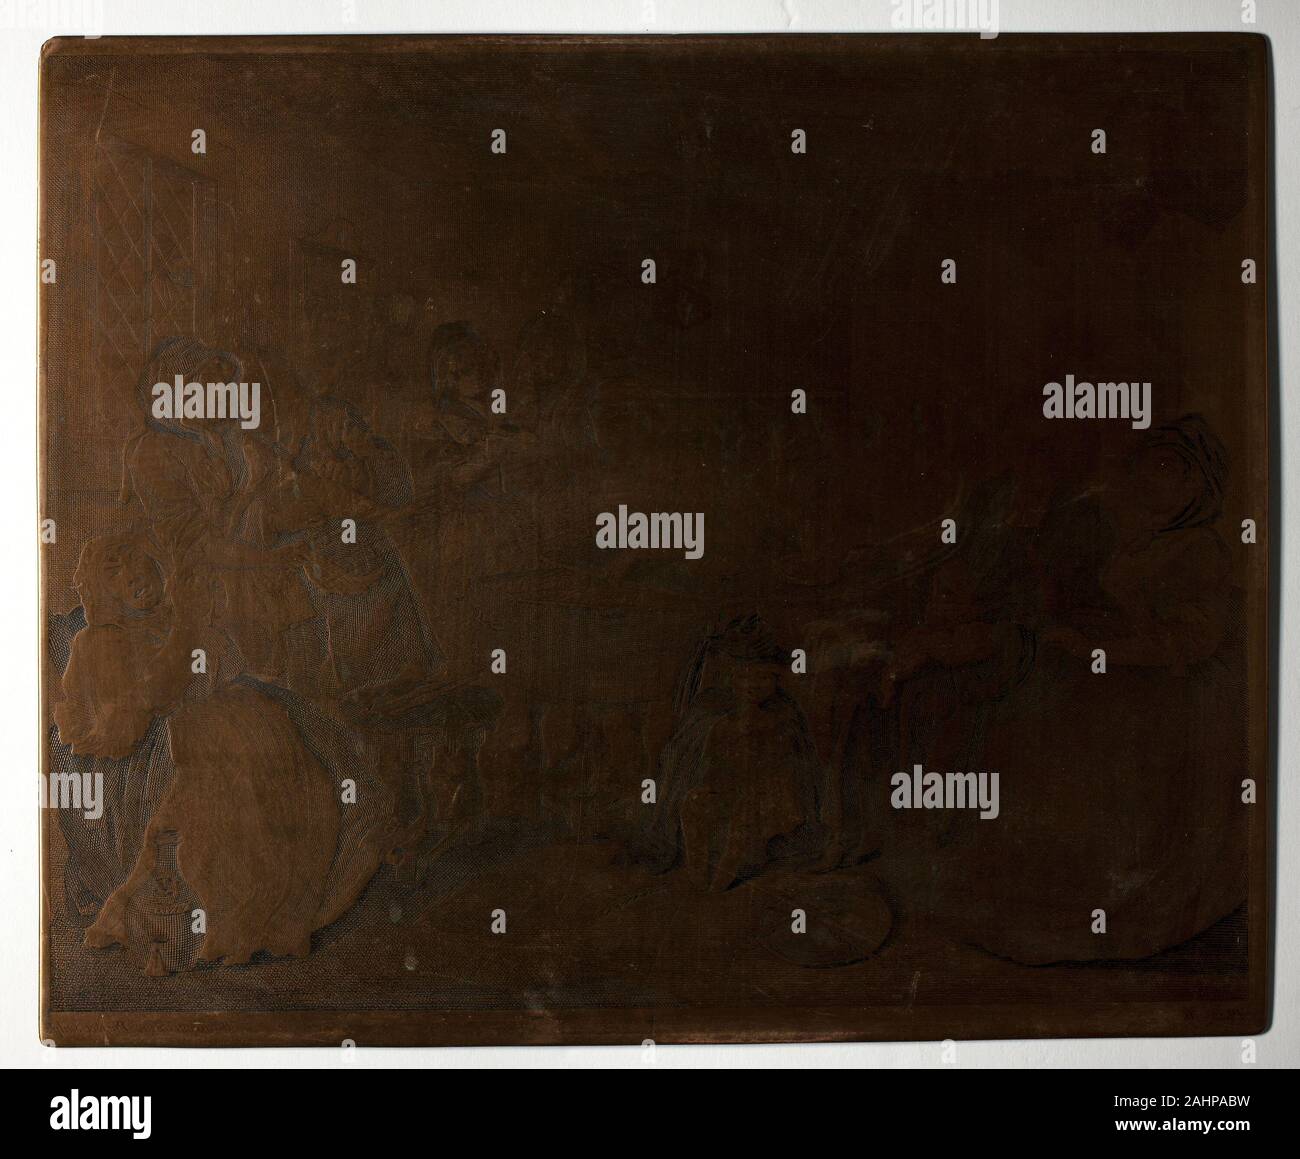 William Hogarth. 6 plaque, à partir d'une prostituée. 1732. L'Angleterre. Hogarth sur cuivre gravé ces six plaques de cuivre (1964.254-59) avec un burin, un outil métallique utilisé pour inciser l'enflure lines directement sur une surface en cuivre aplati. Il a travaillé en sens inverse de la finale de l'impression d'images, qui ont été produites par l'encrage les plaques et leur exécution par le biais d'une presse à rouleaux avec feuilles de papier sur le dessus. La petite croix en bas de chaque plaque a été ajouté lorsque Hogarth a publié le deuxième état, a publié plus de dix ans après la première édition, beaucoup copié. Les impressions sur voir à proximité sont début de s Banque D'Images